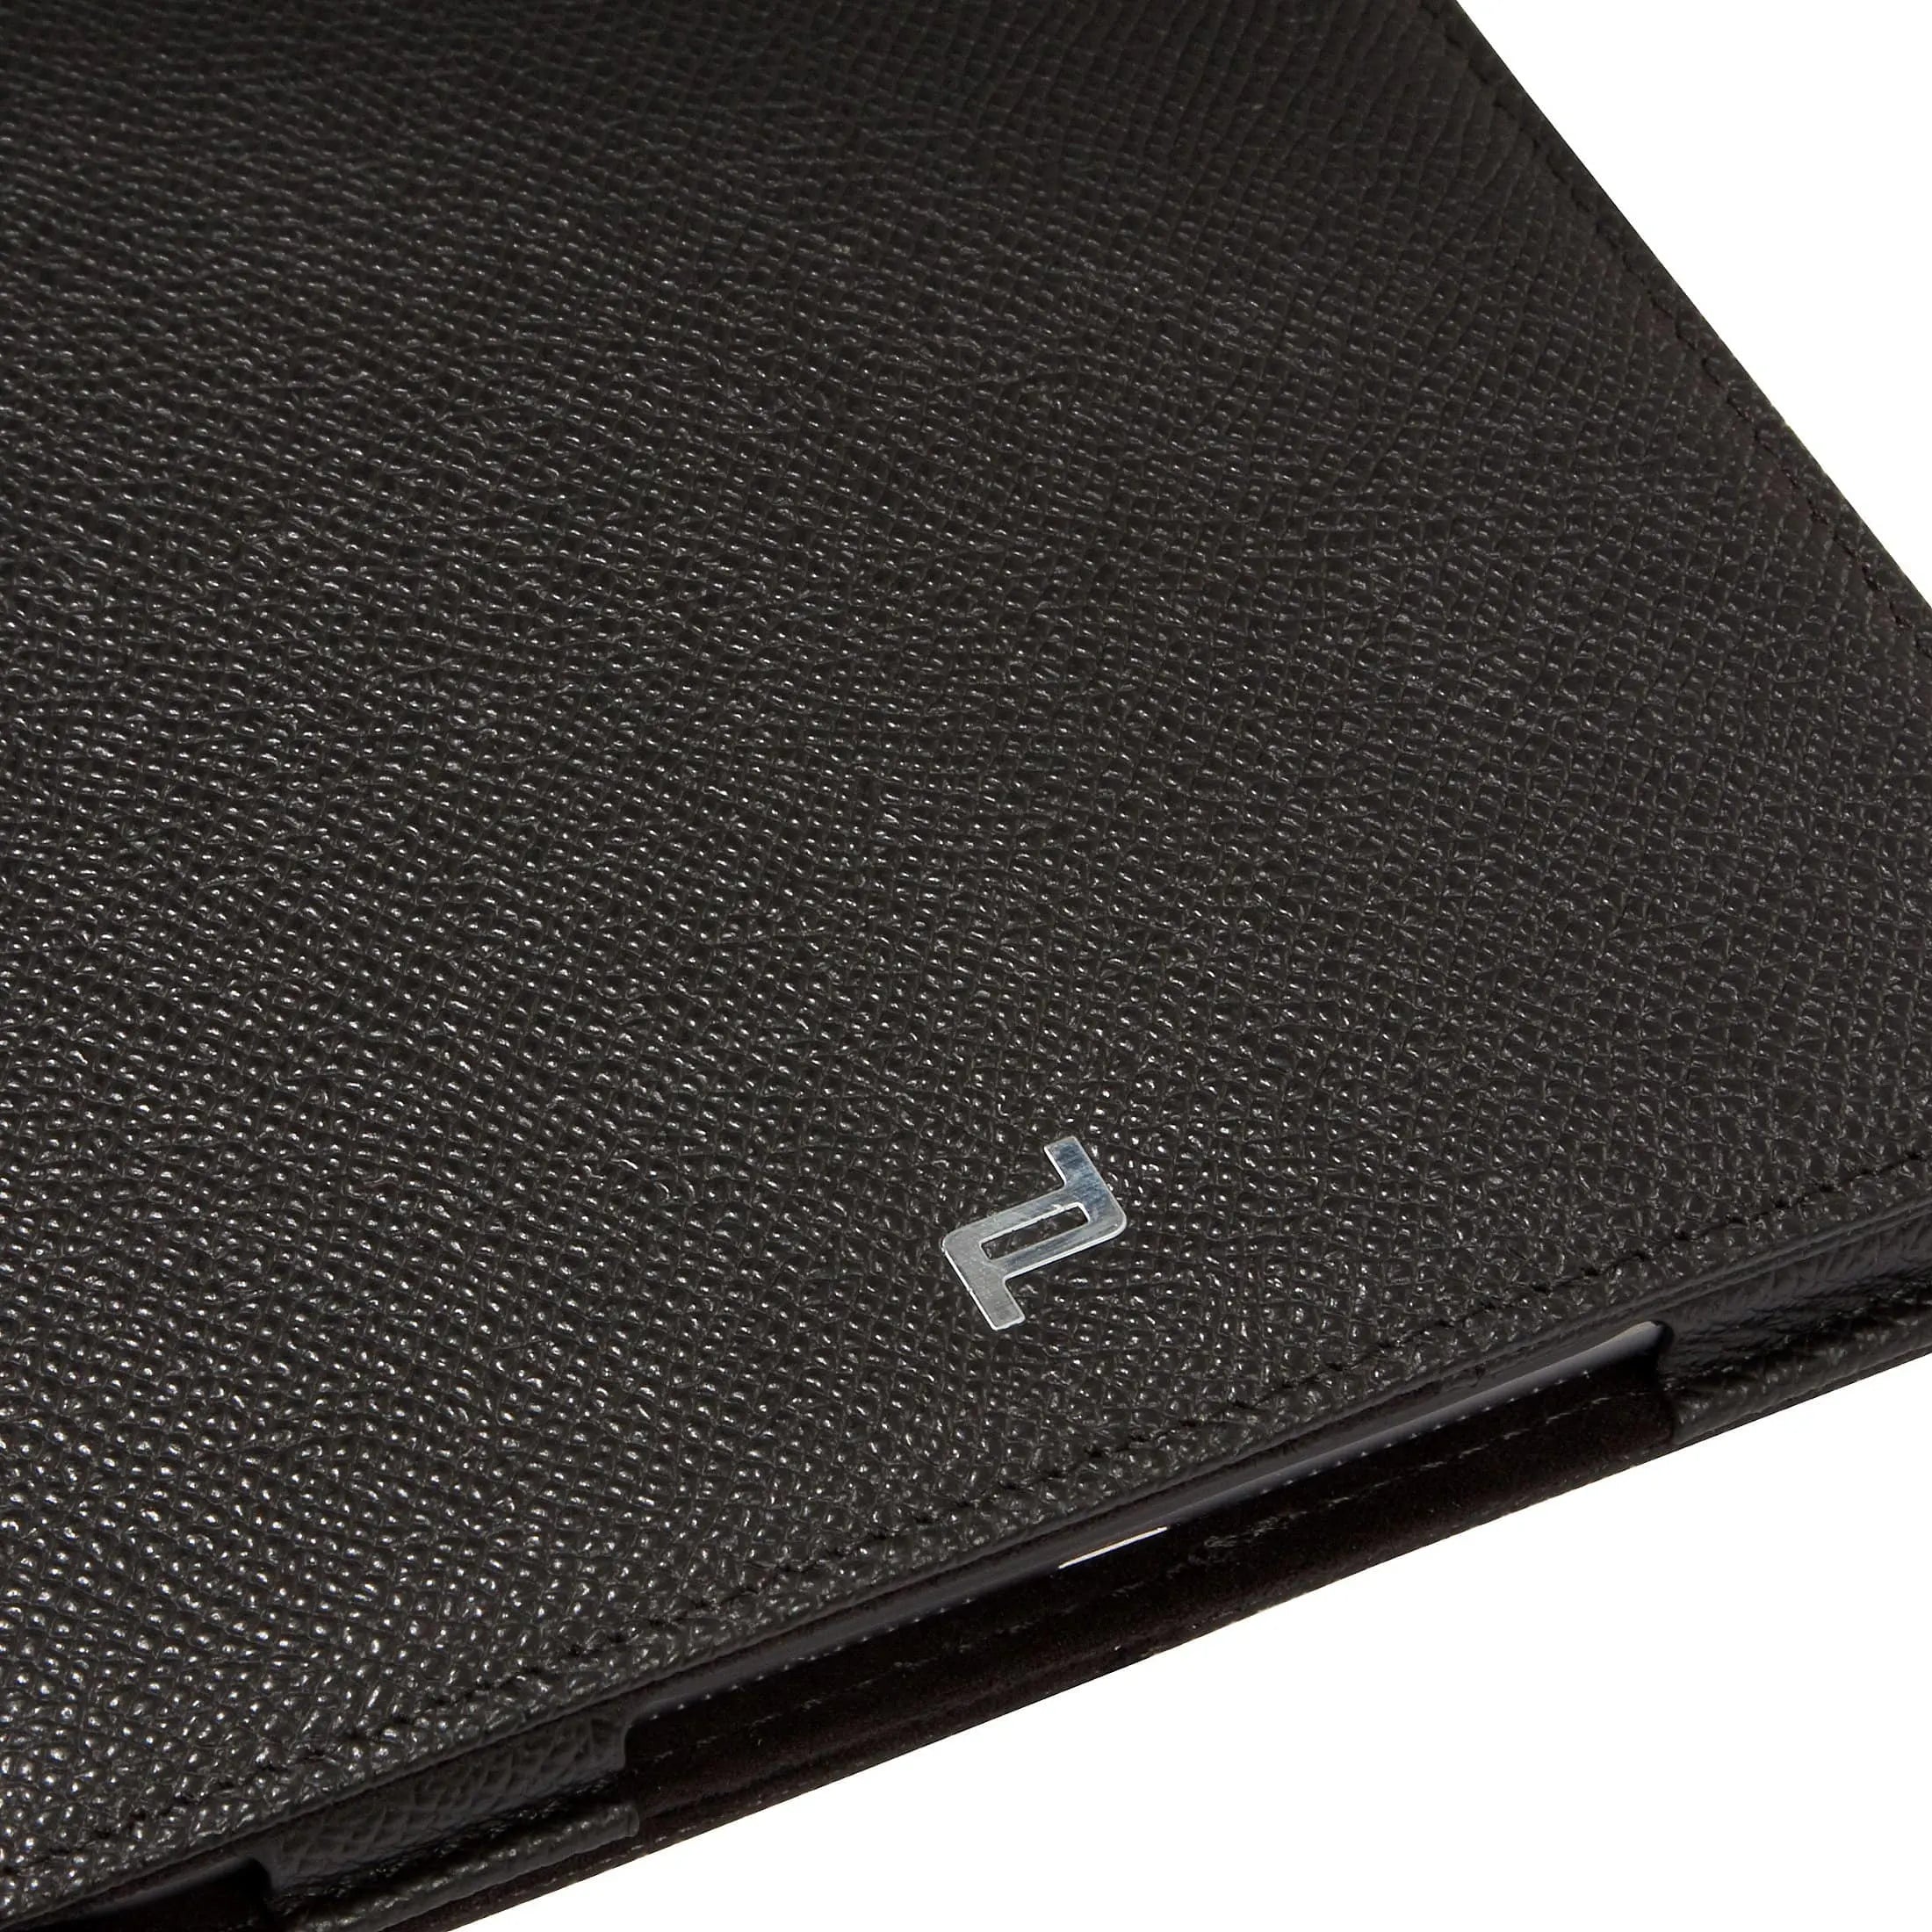 Porsche Design French Classic 3.0 iPad mini Case 1 21 cm - dark brown